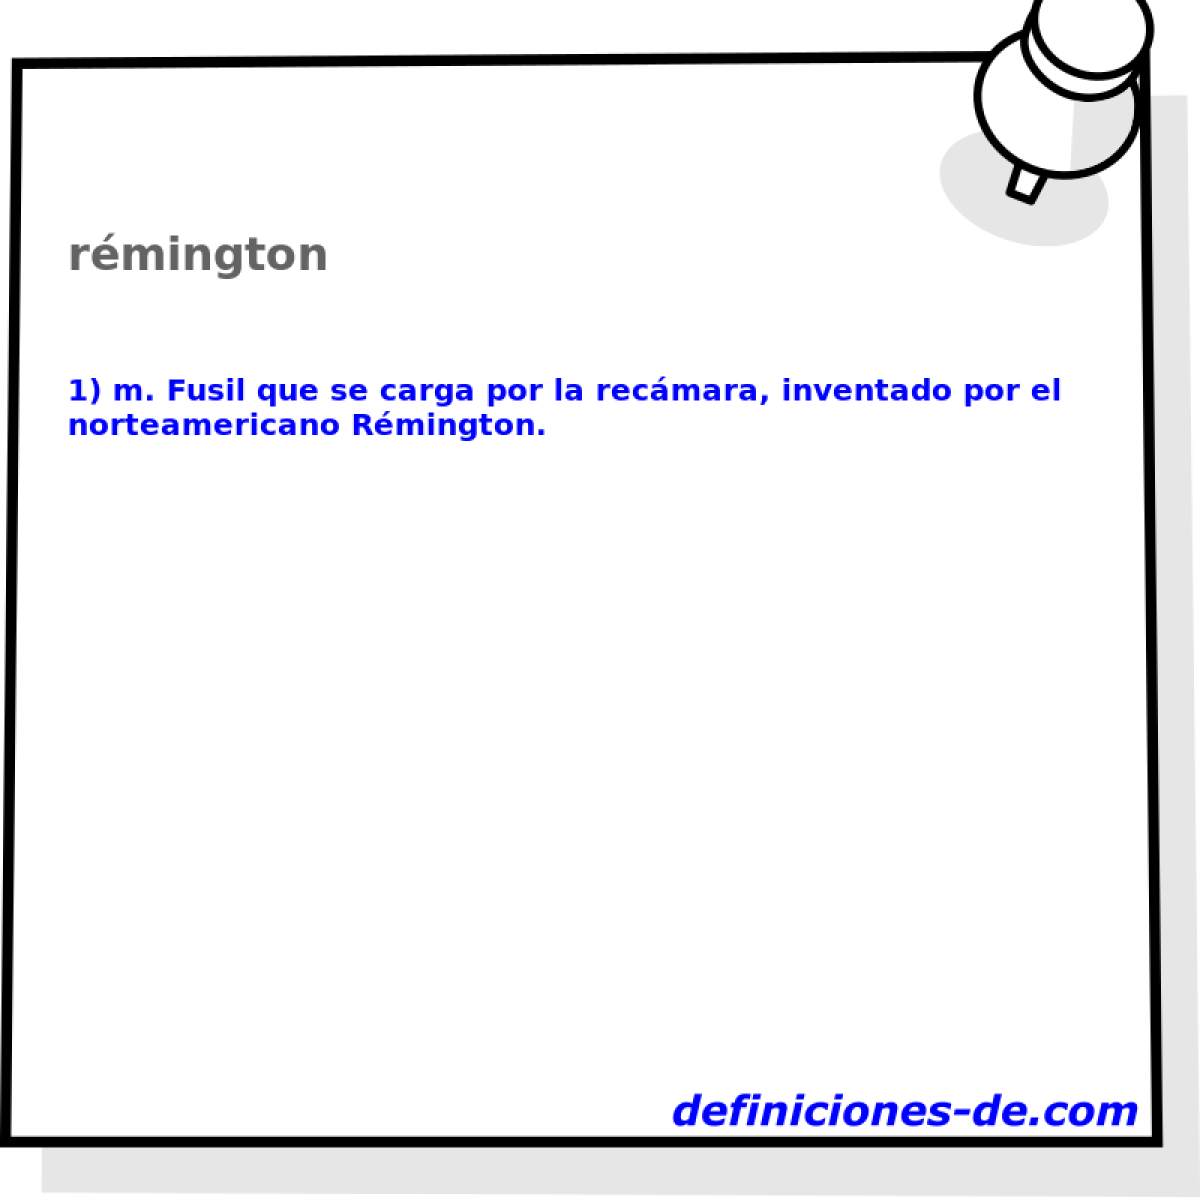 rmington 